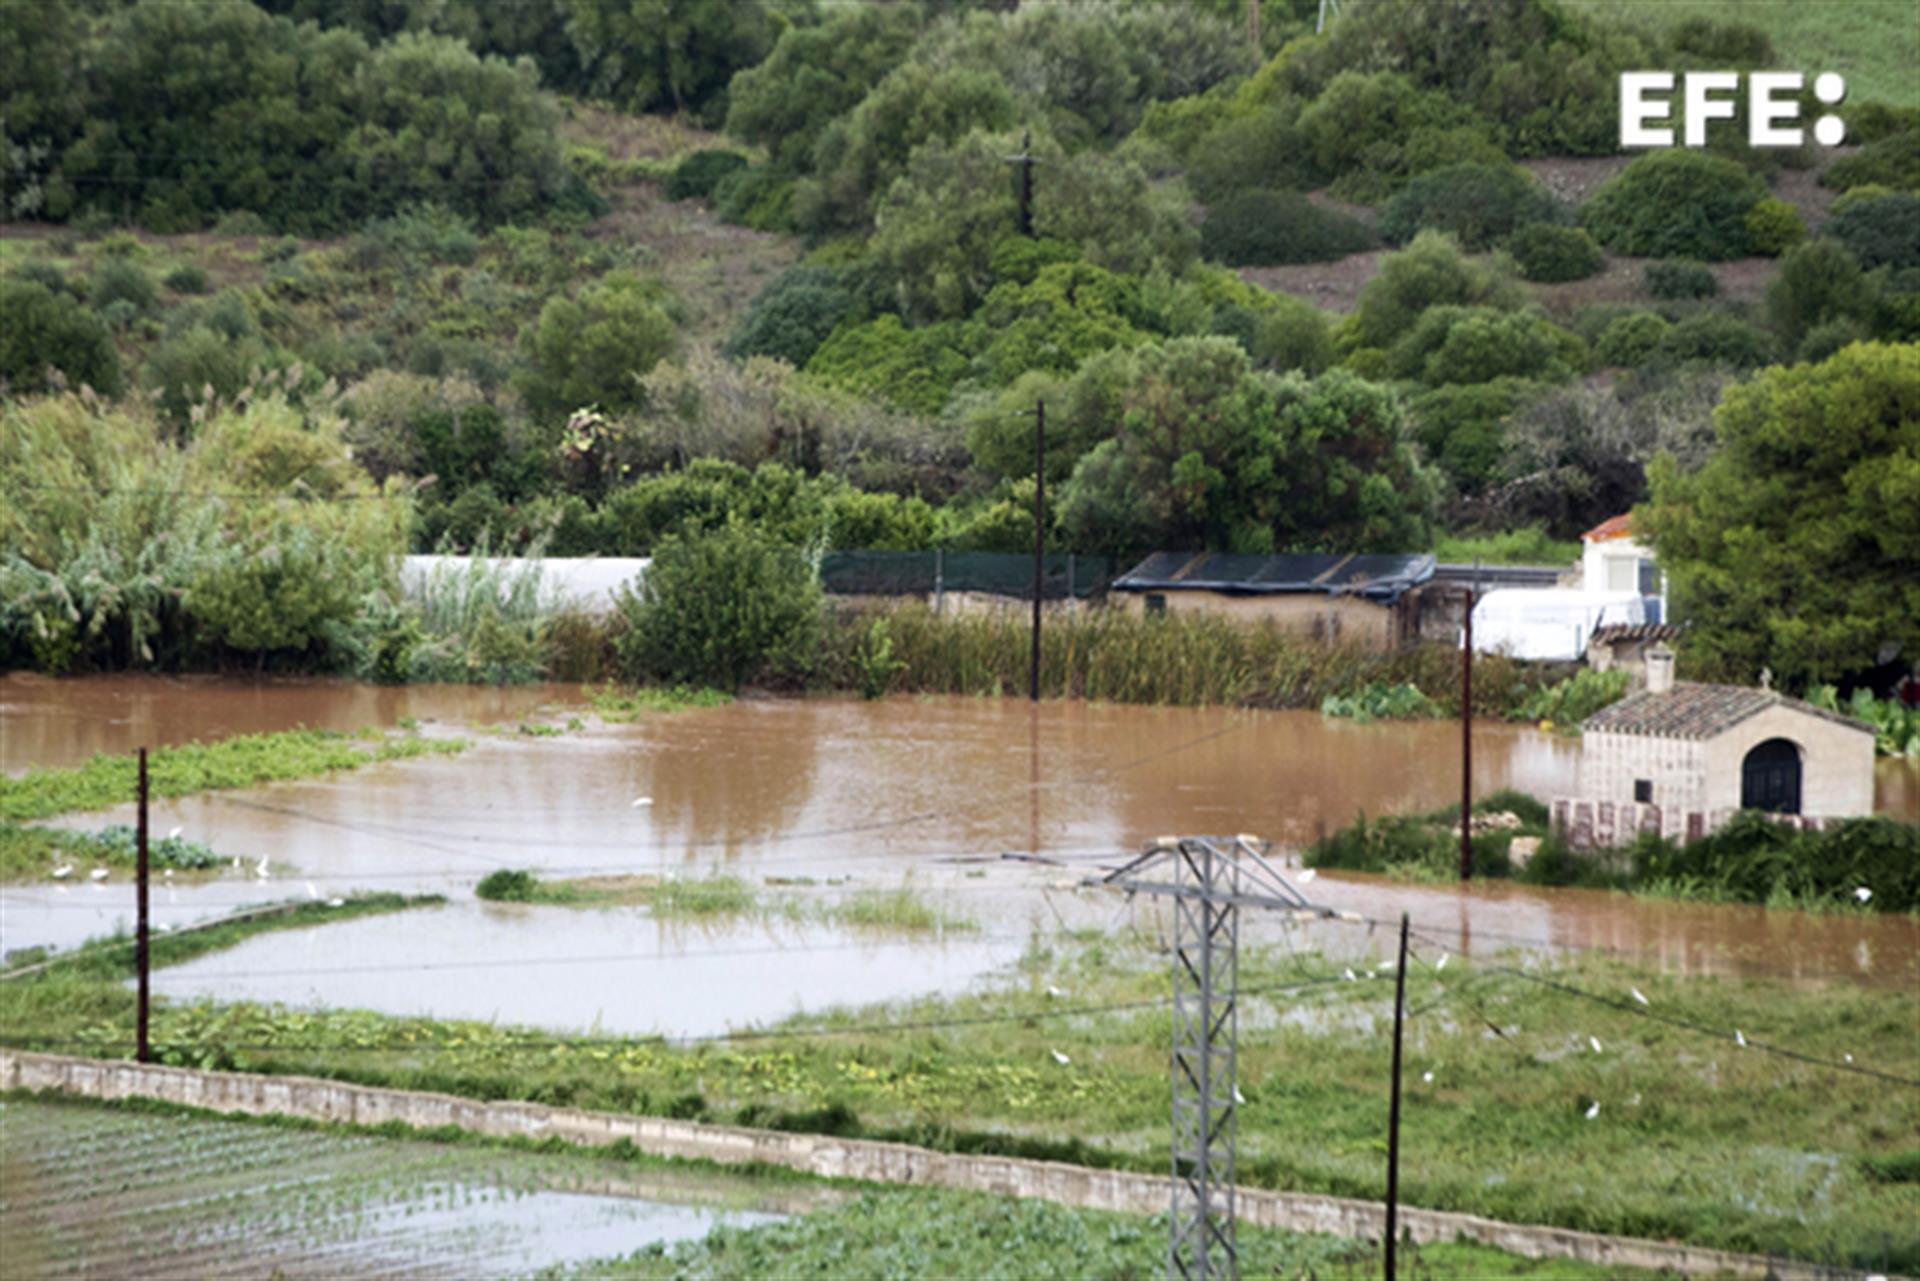 Inundaciones en la zona agrícola dels Vergers de Sant Joan, en Mahón, tras las fuertes lluvias acontecidas este viernes en Menorca. Baleares se encuentra hoy en alerta amarilla (riesgo) por acumulaciones de lluvia de hasta 80 litros por metro cuadrado en 12 horas en Menorca o de 25 litros en una hora en Mallorca, con posibilidad de tormenta. EFE/ David Arquimbau Sintes